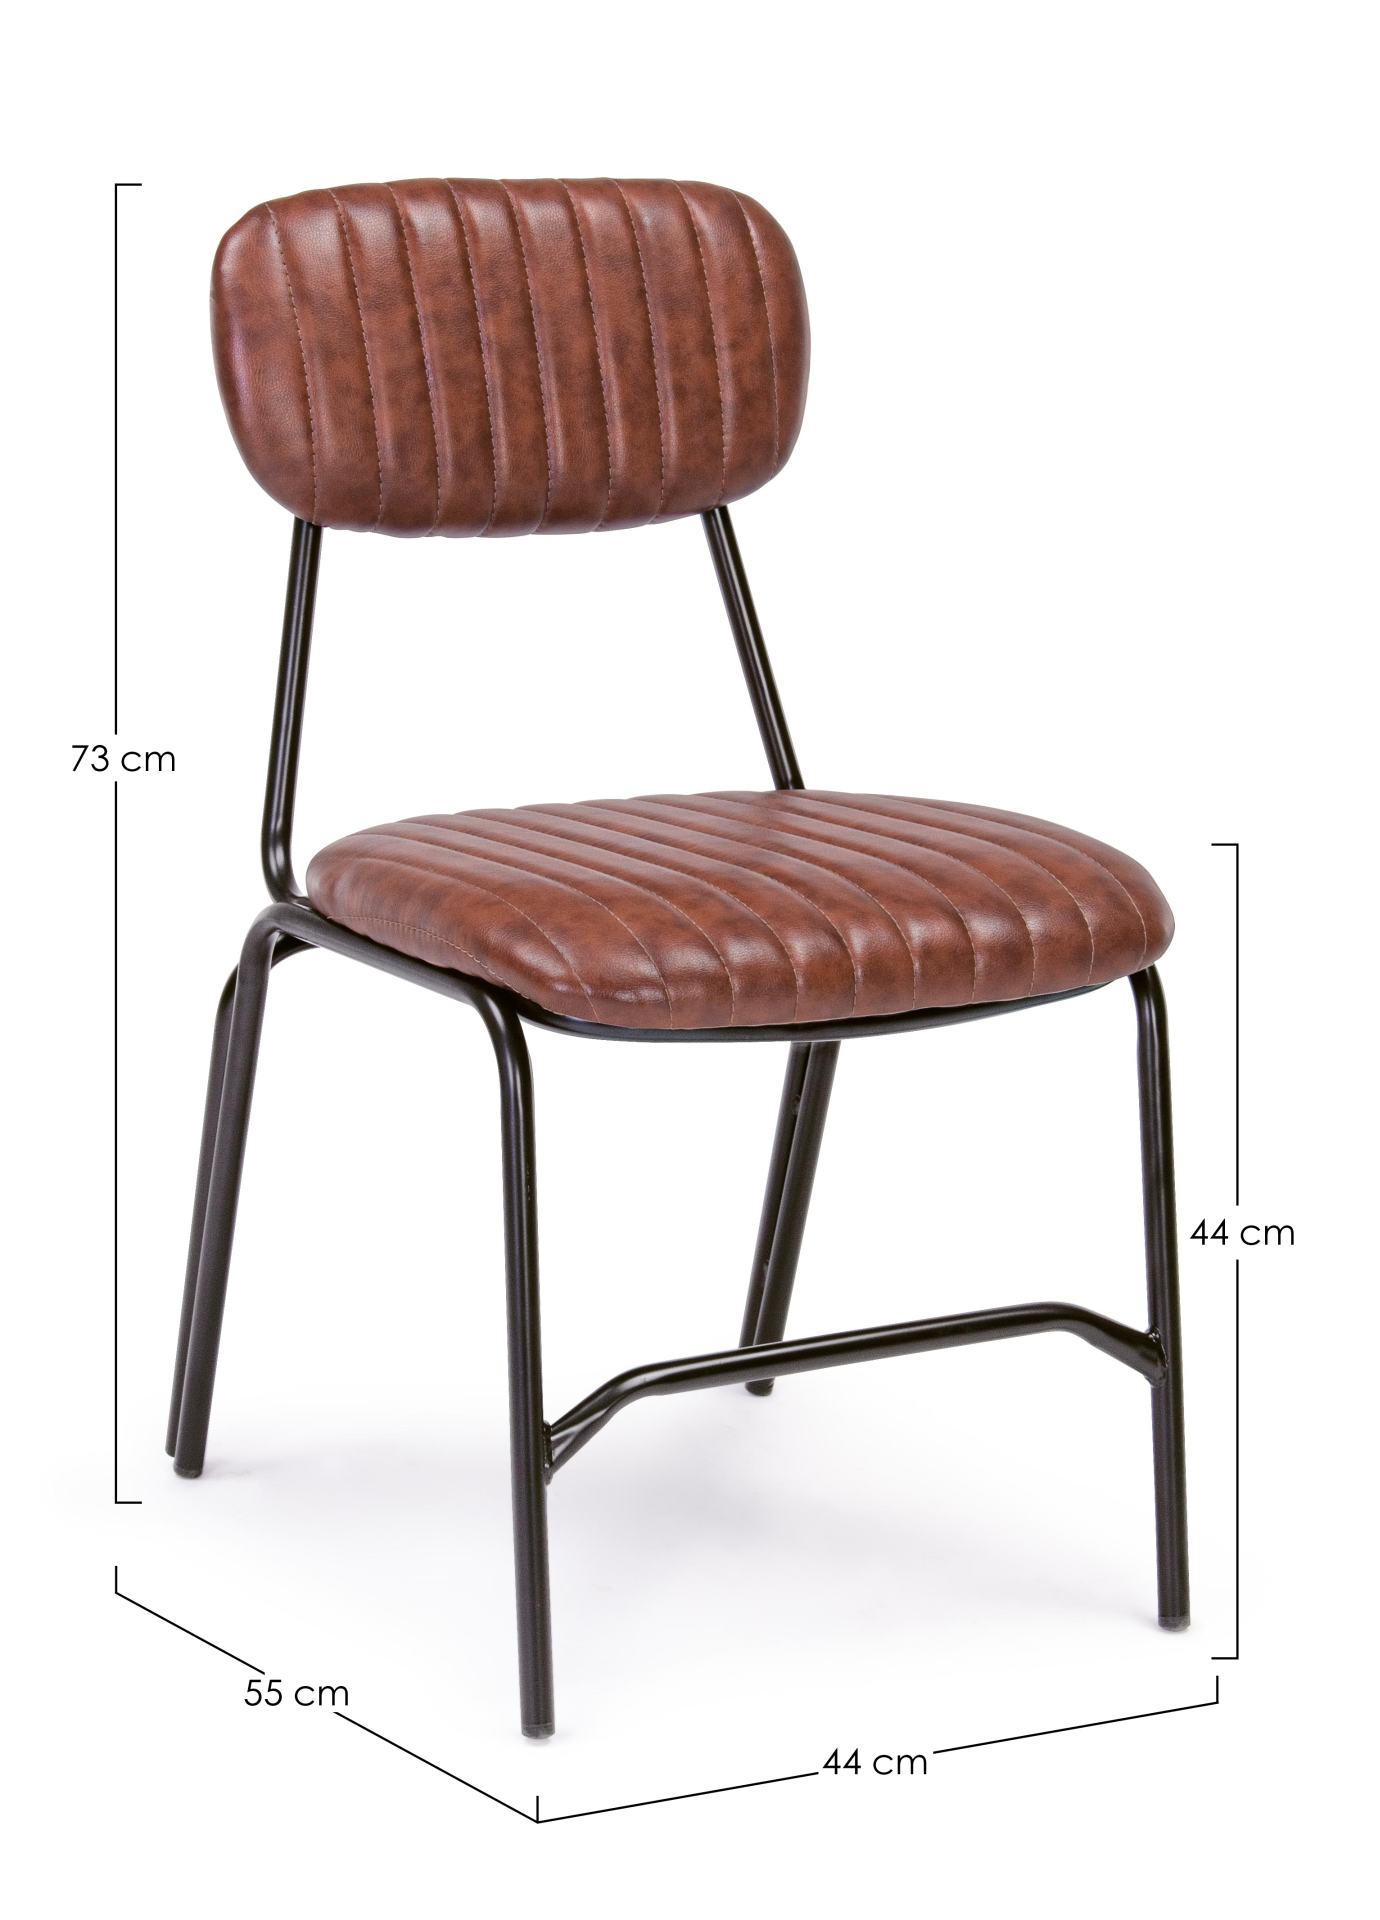 Der Stuhl Debbie überzeugt mit seinem industriellen Design. Gefertigt wurde der Stuhl aus Kunstleder, welches einen Cognac Farbton besitzt. Das Gestell ist aus Metall und ist Schwarz. Die Sitzhöhe beträgt 44 cm.